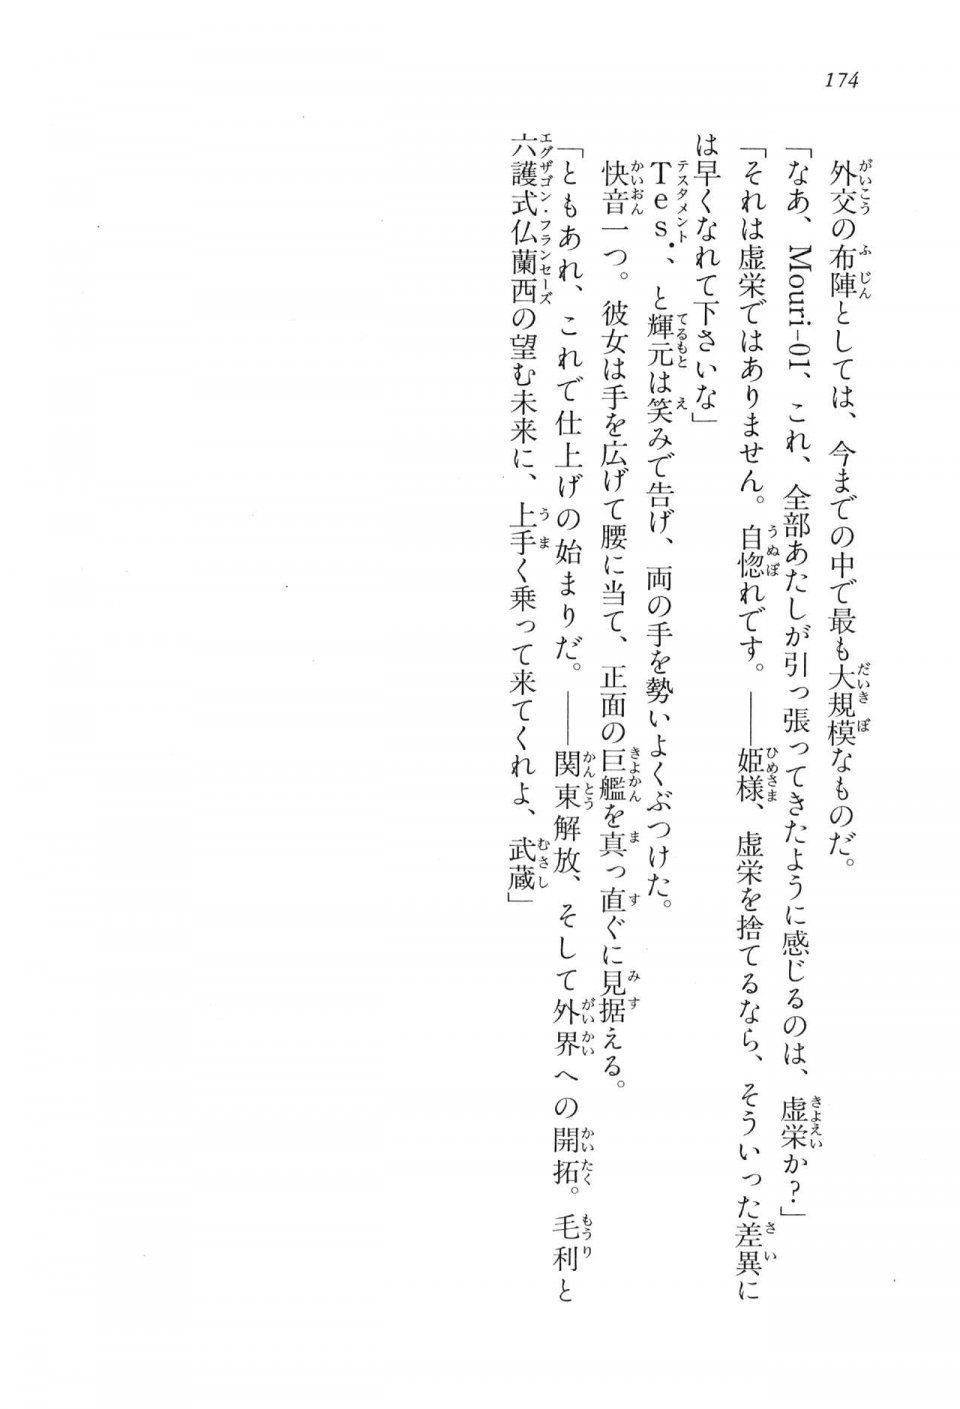 Kyoukai Senjou no Horizon LN Vol 16(7A) - Photo #174